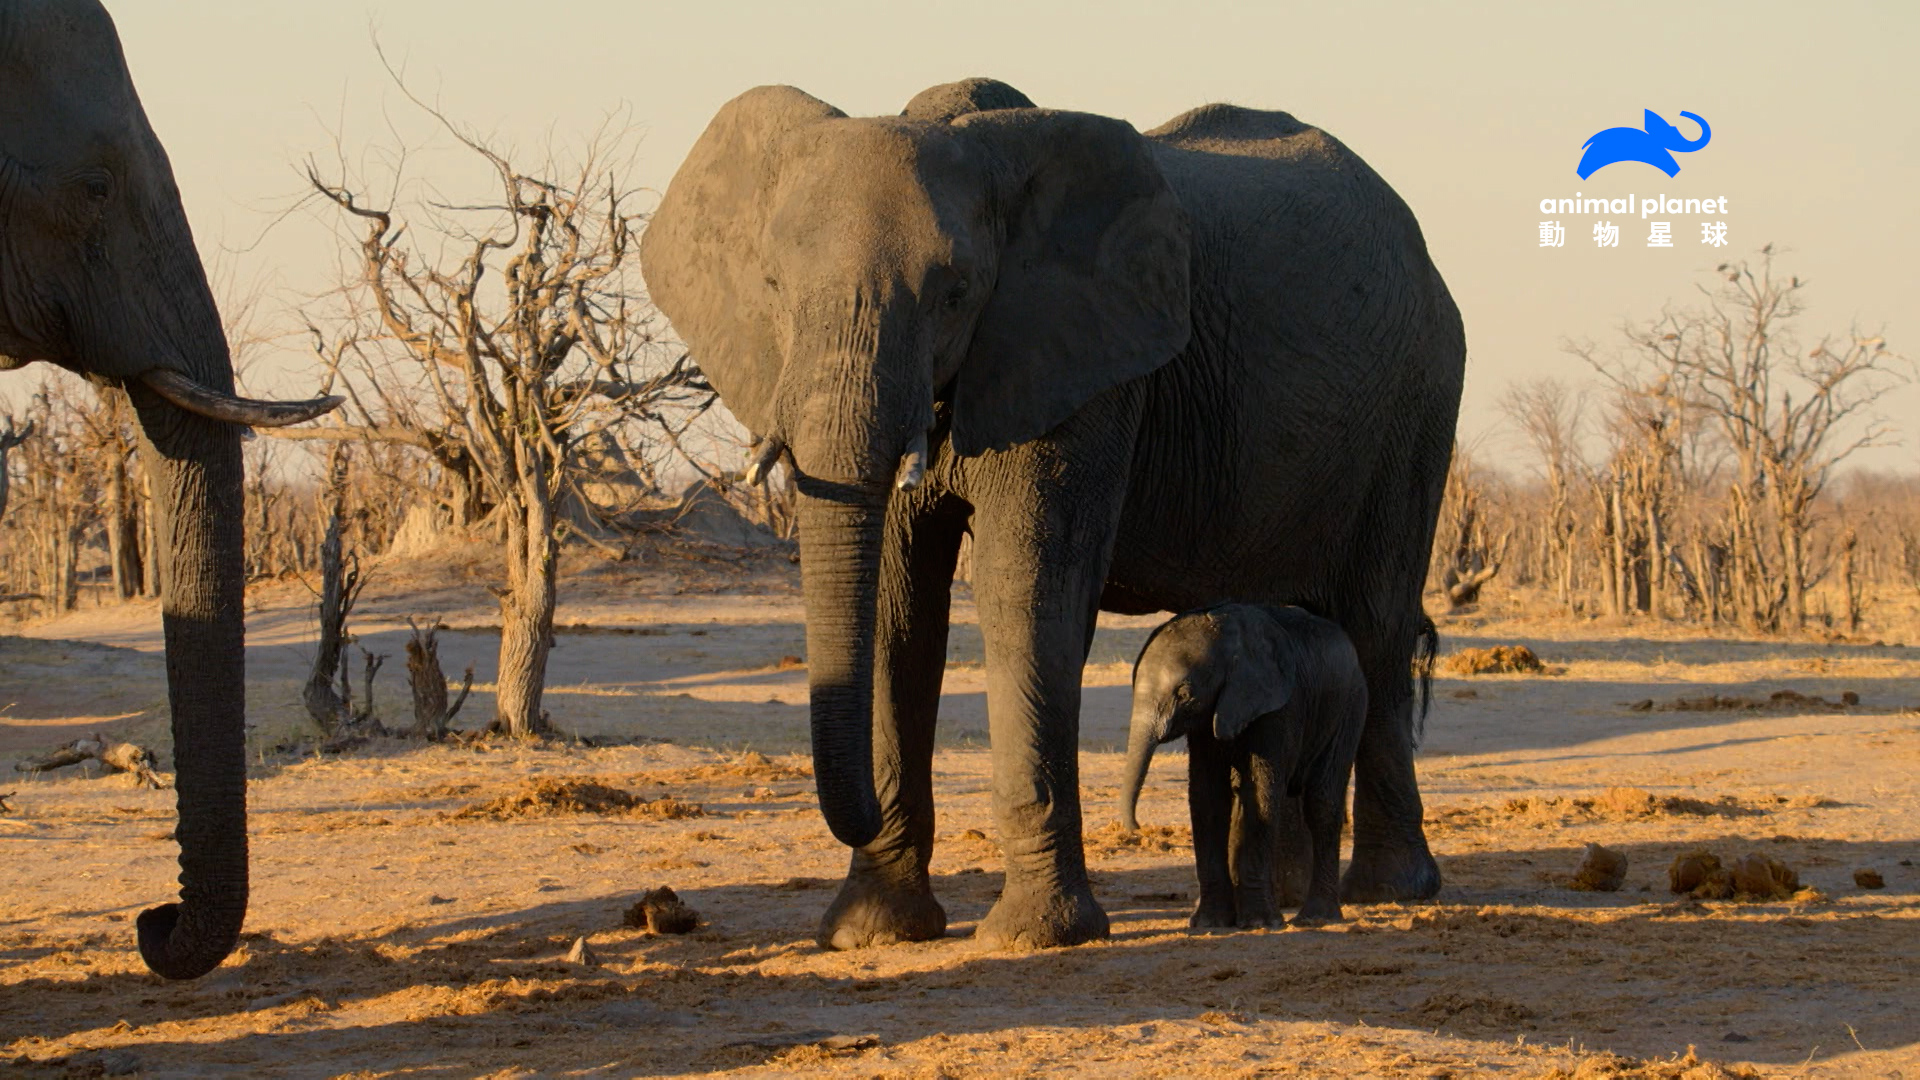 為了每天產生-13-公升的奶水給小象喝，如何在乾旱中找尋水源成為母象的考驗。（圖片來源：Warner Bros. Discovery 提供）